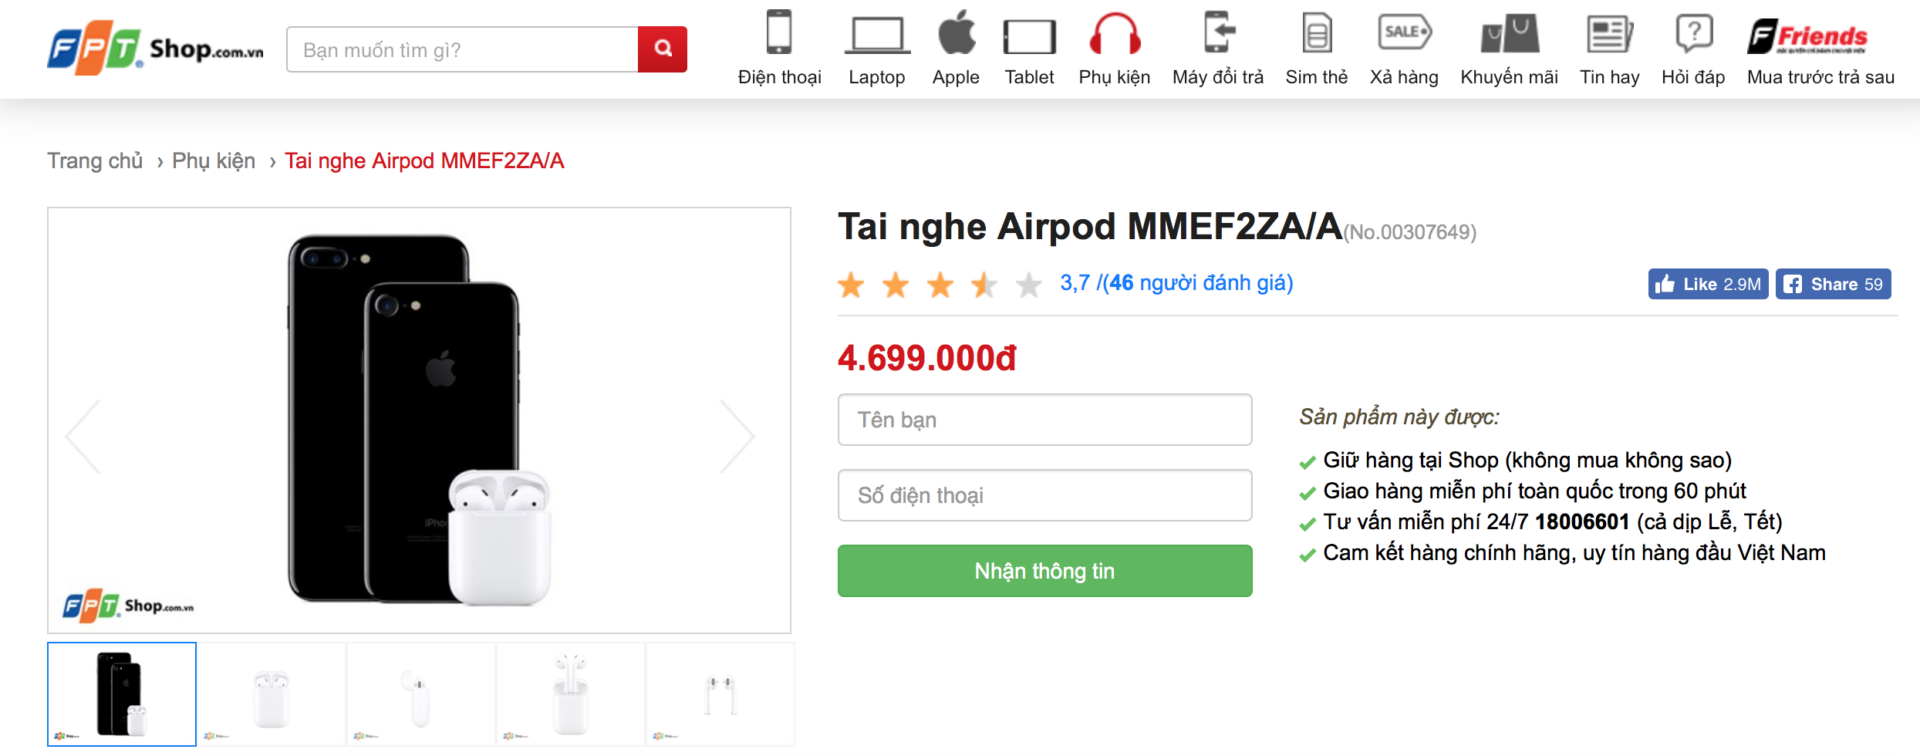 Tai nghe AirPods chính hãng Việt Nam được bán tại FPT Shop với giá 4.699.000 đồng